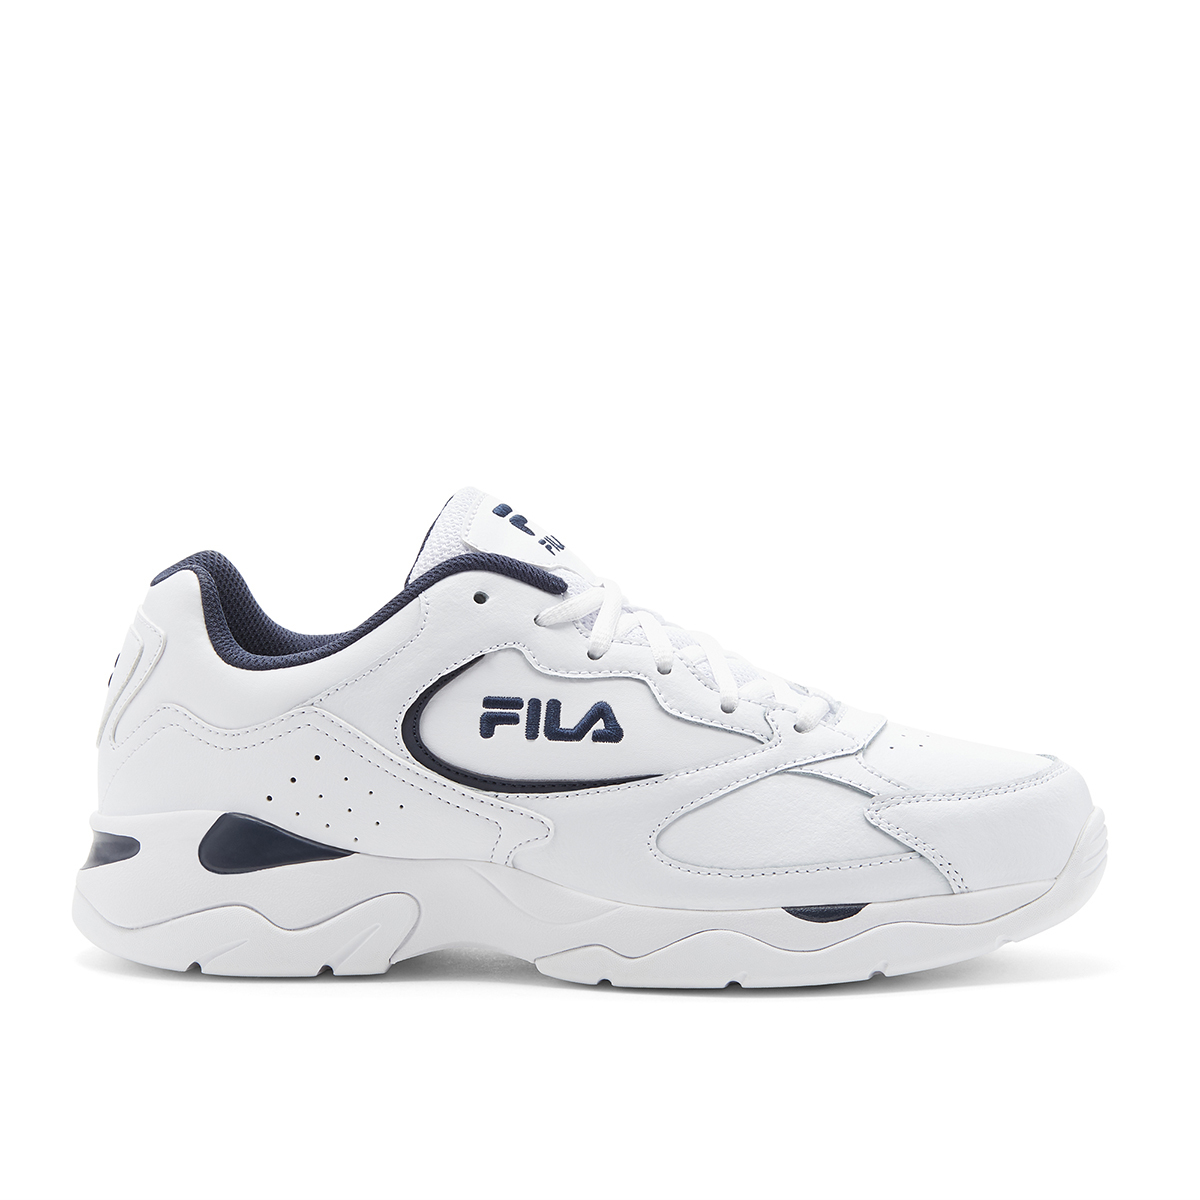 fila runner shoes